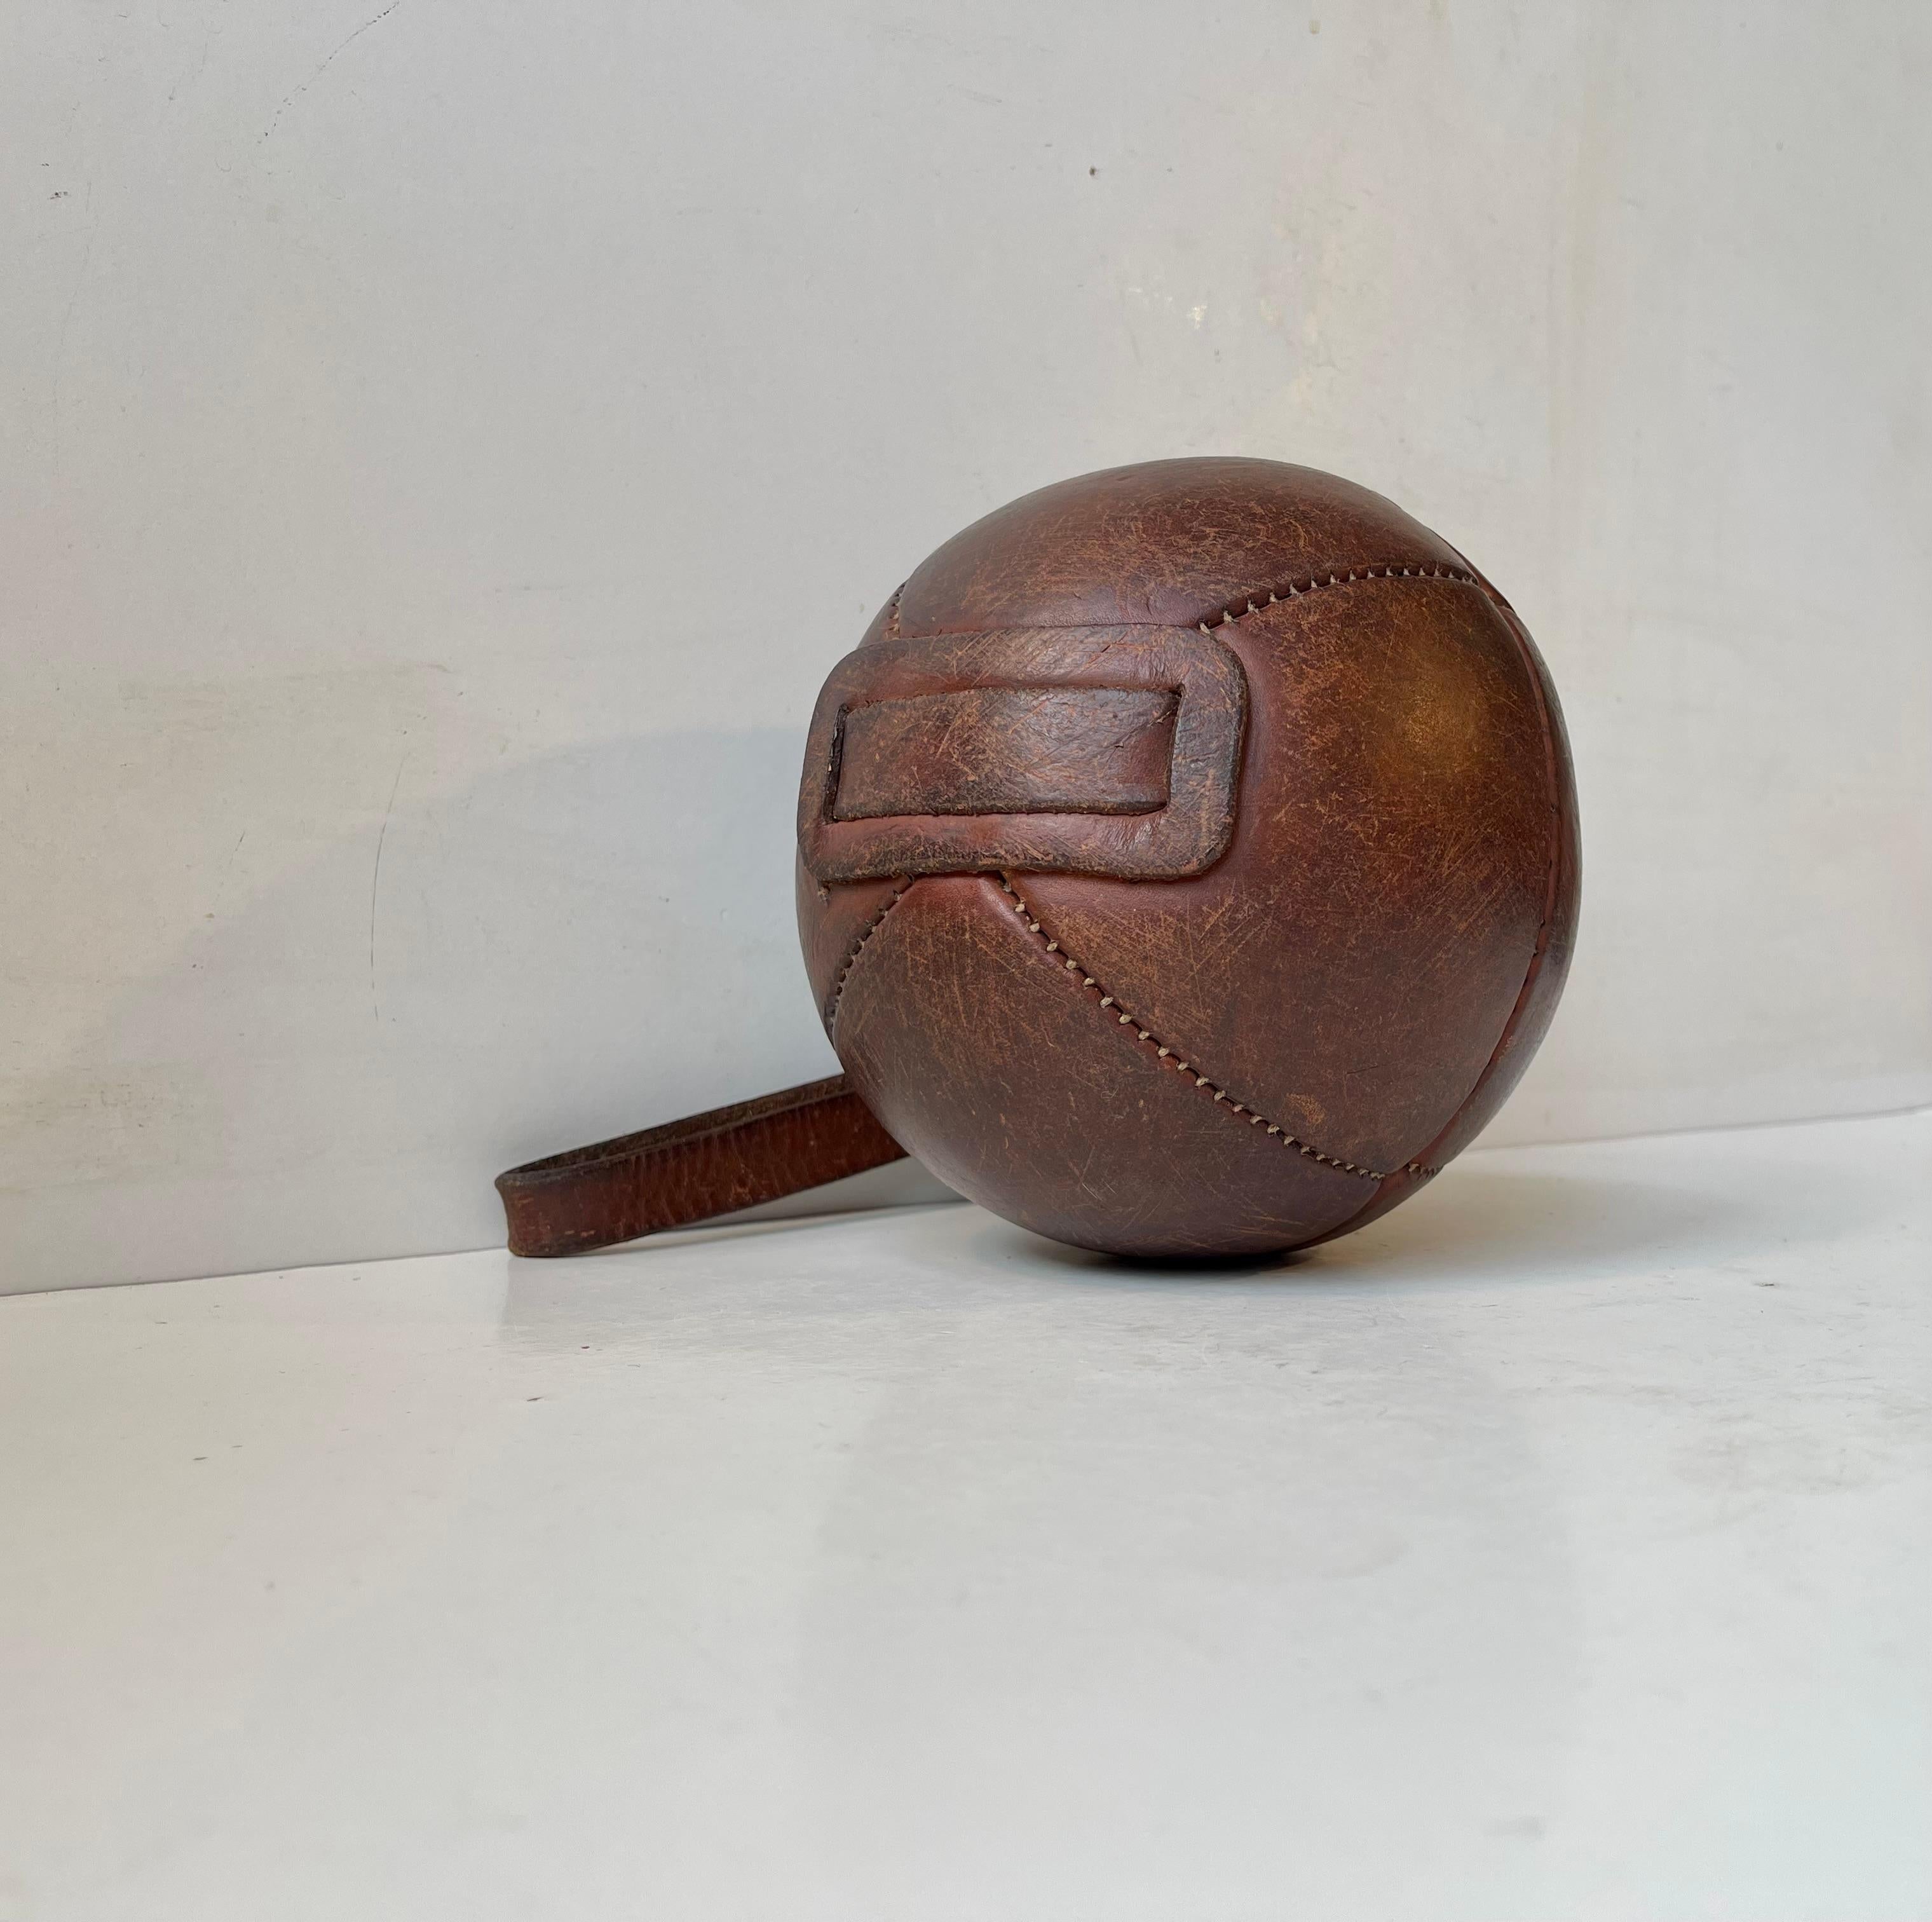 Ein dekorativer Riemenball aus patiniertem gegerbtem Leder. Ursprünglich wurden sie als Tragetuch, Medizinball oder Boxball verwendet. Dieses Exemplar wurde in Frankreich um 1930-40 handgefertigt und befindet sich in einem sehr authentischen und